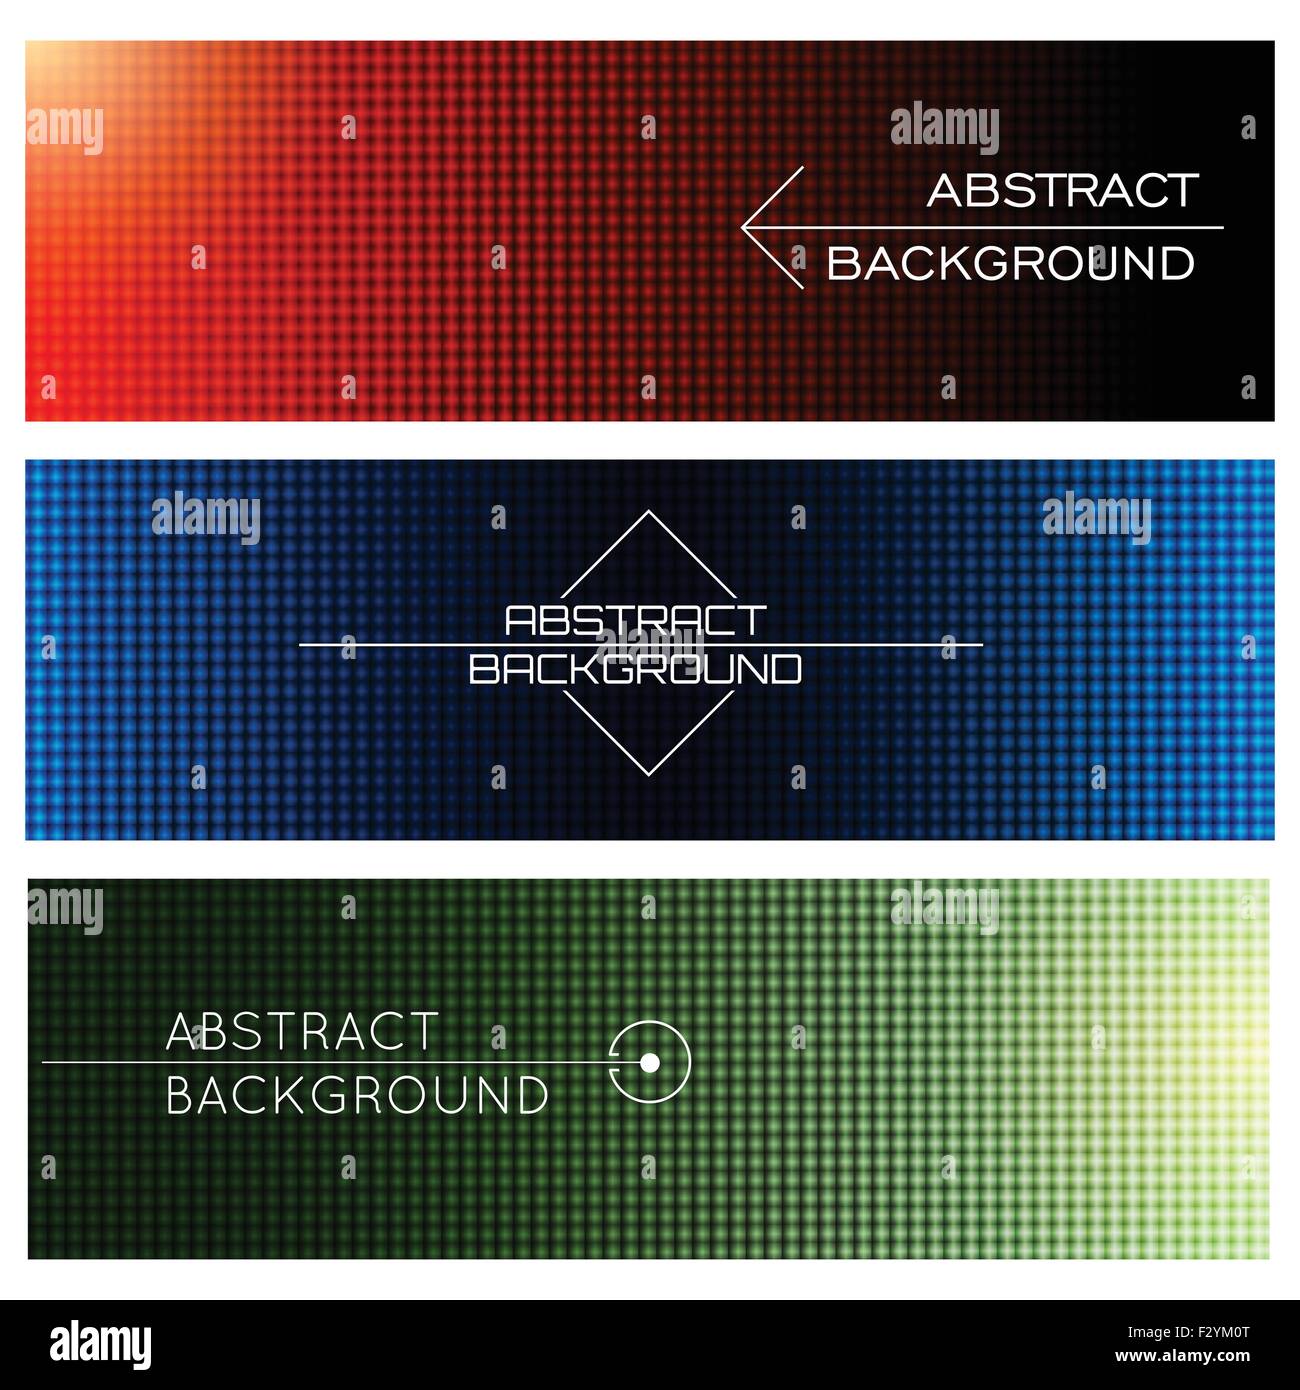 Bunte abstrakte Seitenüberschrift oder Banner-Set. Strukturierten Hintergrund in drei Farbvariationen. Stock Vektor